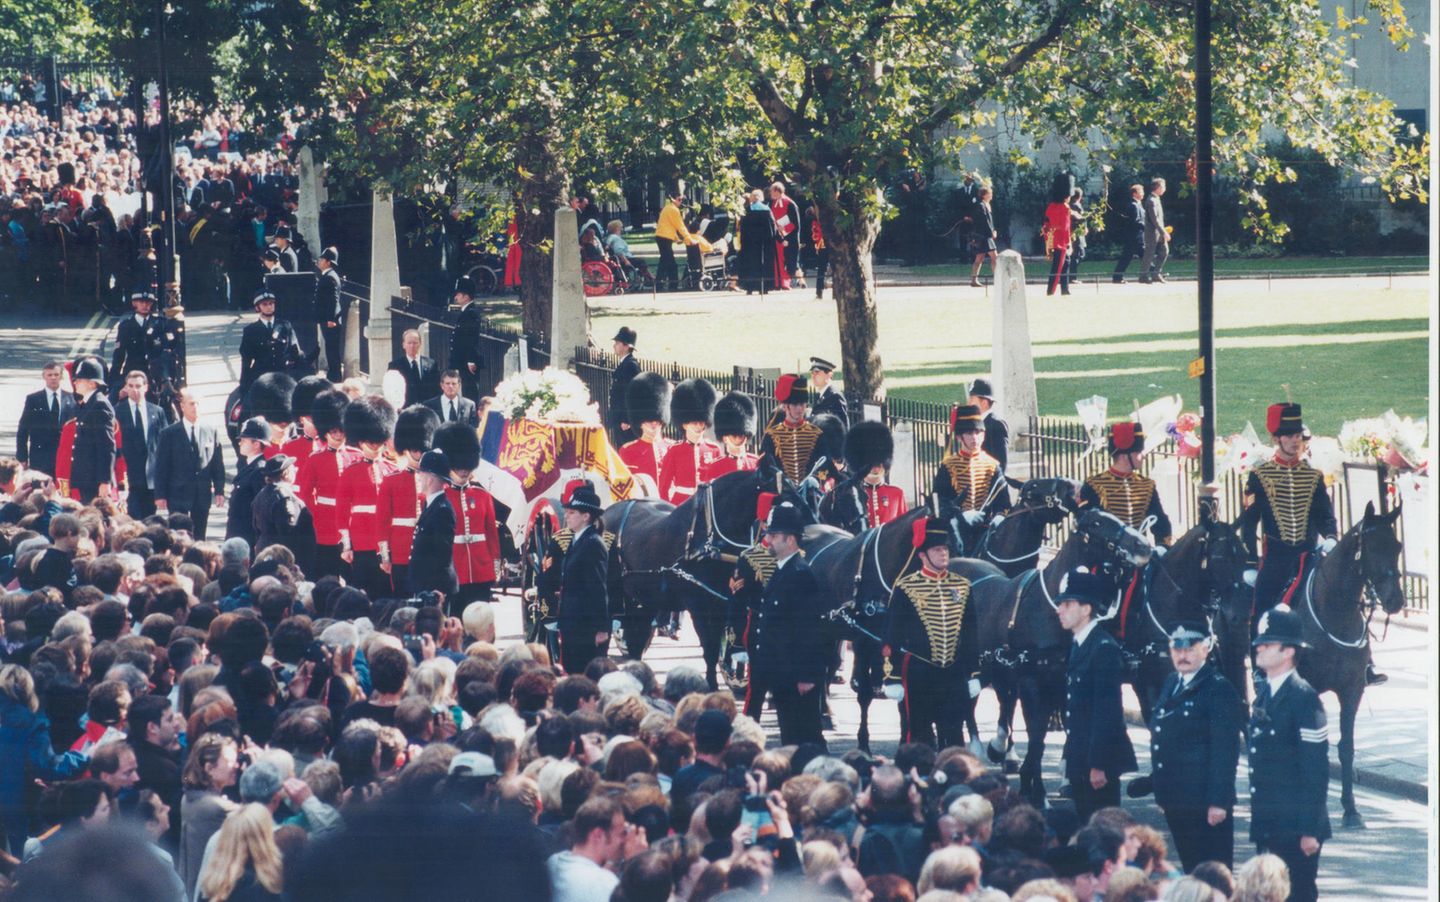 Der Wunsch der Familie Spencer und auch der Queen war es gewesen, Dianas Trauerfeier privat abzuhalten. Doch am Ende war das Ausmaß der öffentlichen Anteilnahme zu gewaltig, um diesen Plan umzusetzen. Dianas Trauerfeier und Beerdigung waren jedoch kein Staatsbegräbnis, sondern eine Zeremonie nach royalem Protokoll. Als Vorlage diente ein Trauerfeierplan, der für Queen Mum entwickelt wurde. 